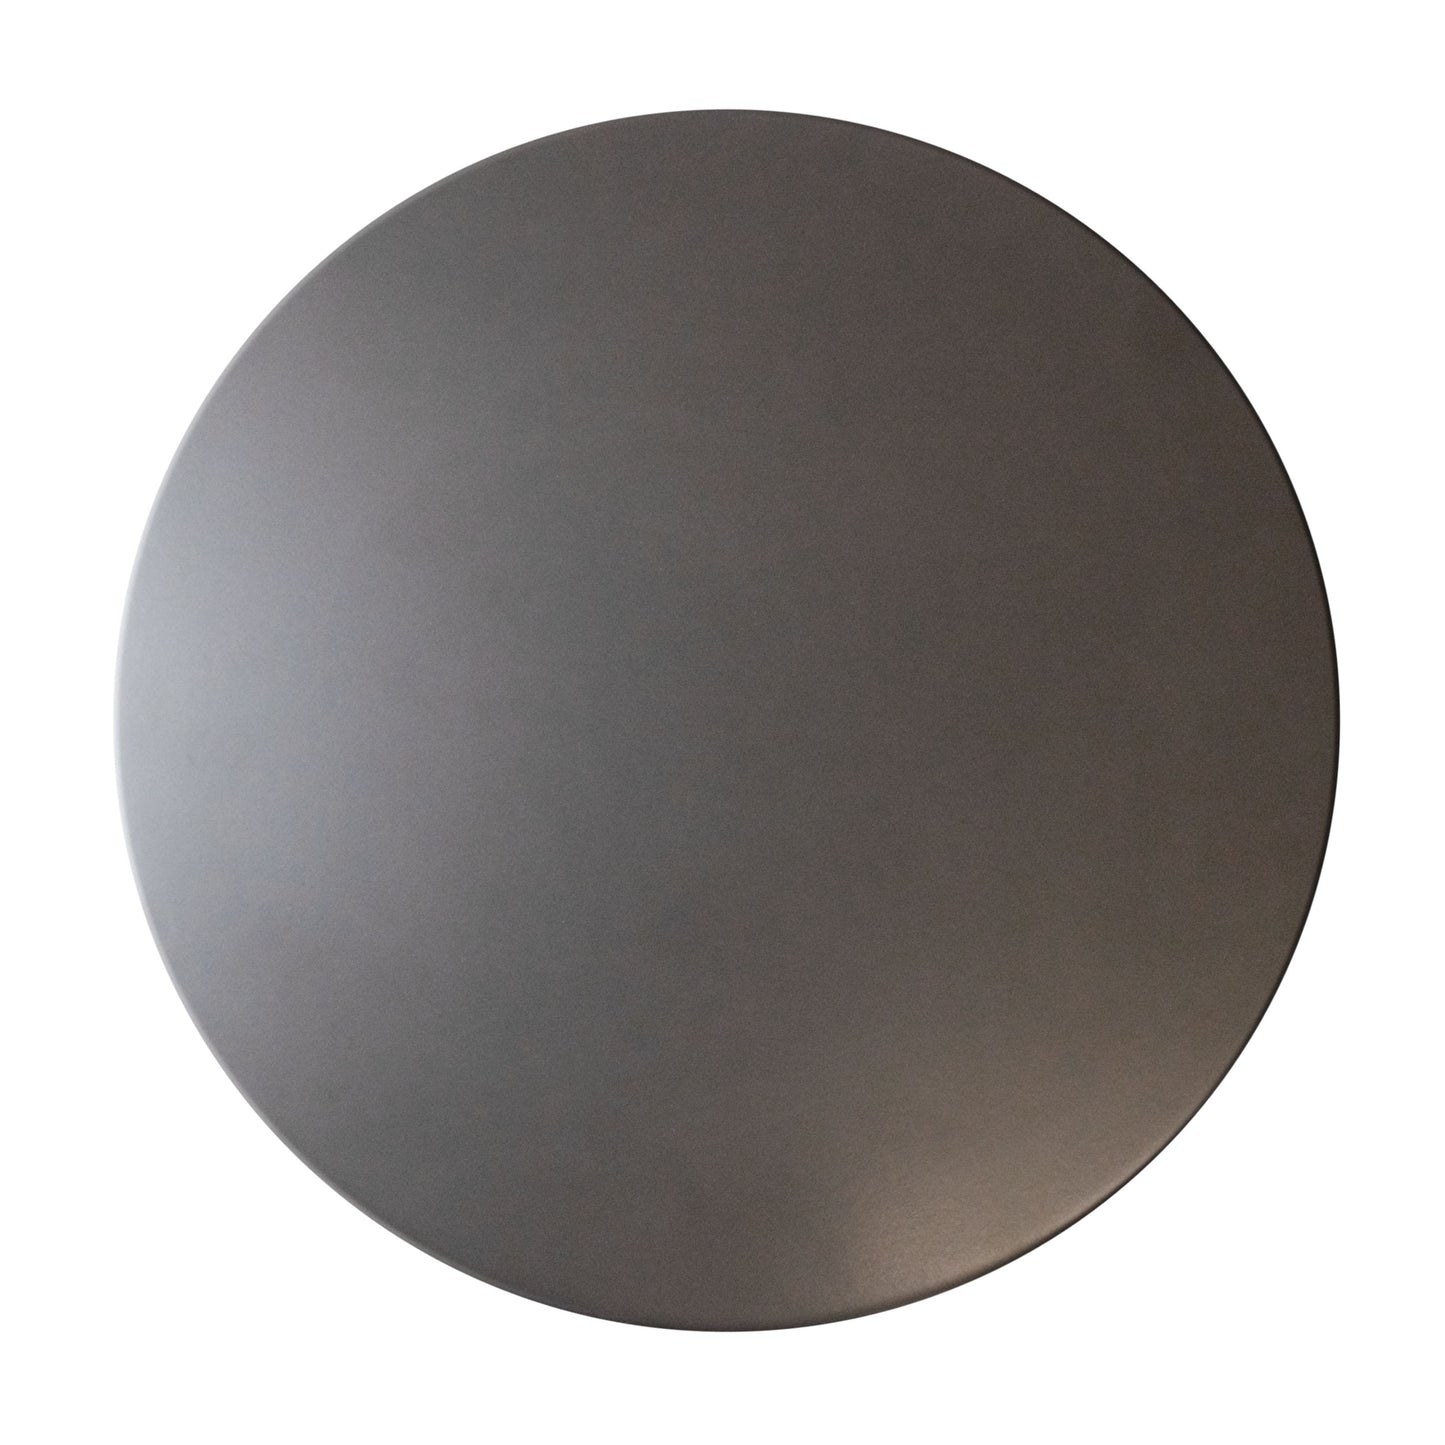 Glazed Round Pizza Stone, 14-Inch, Grey